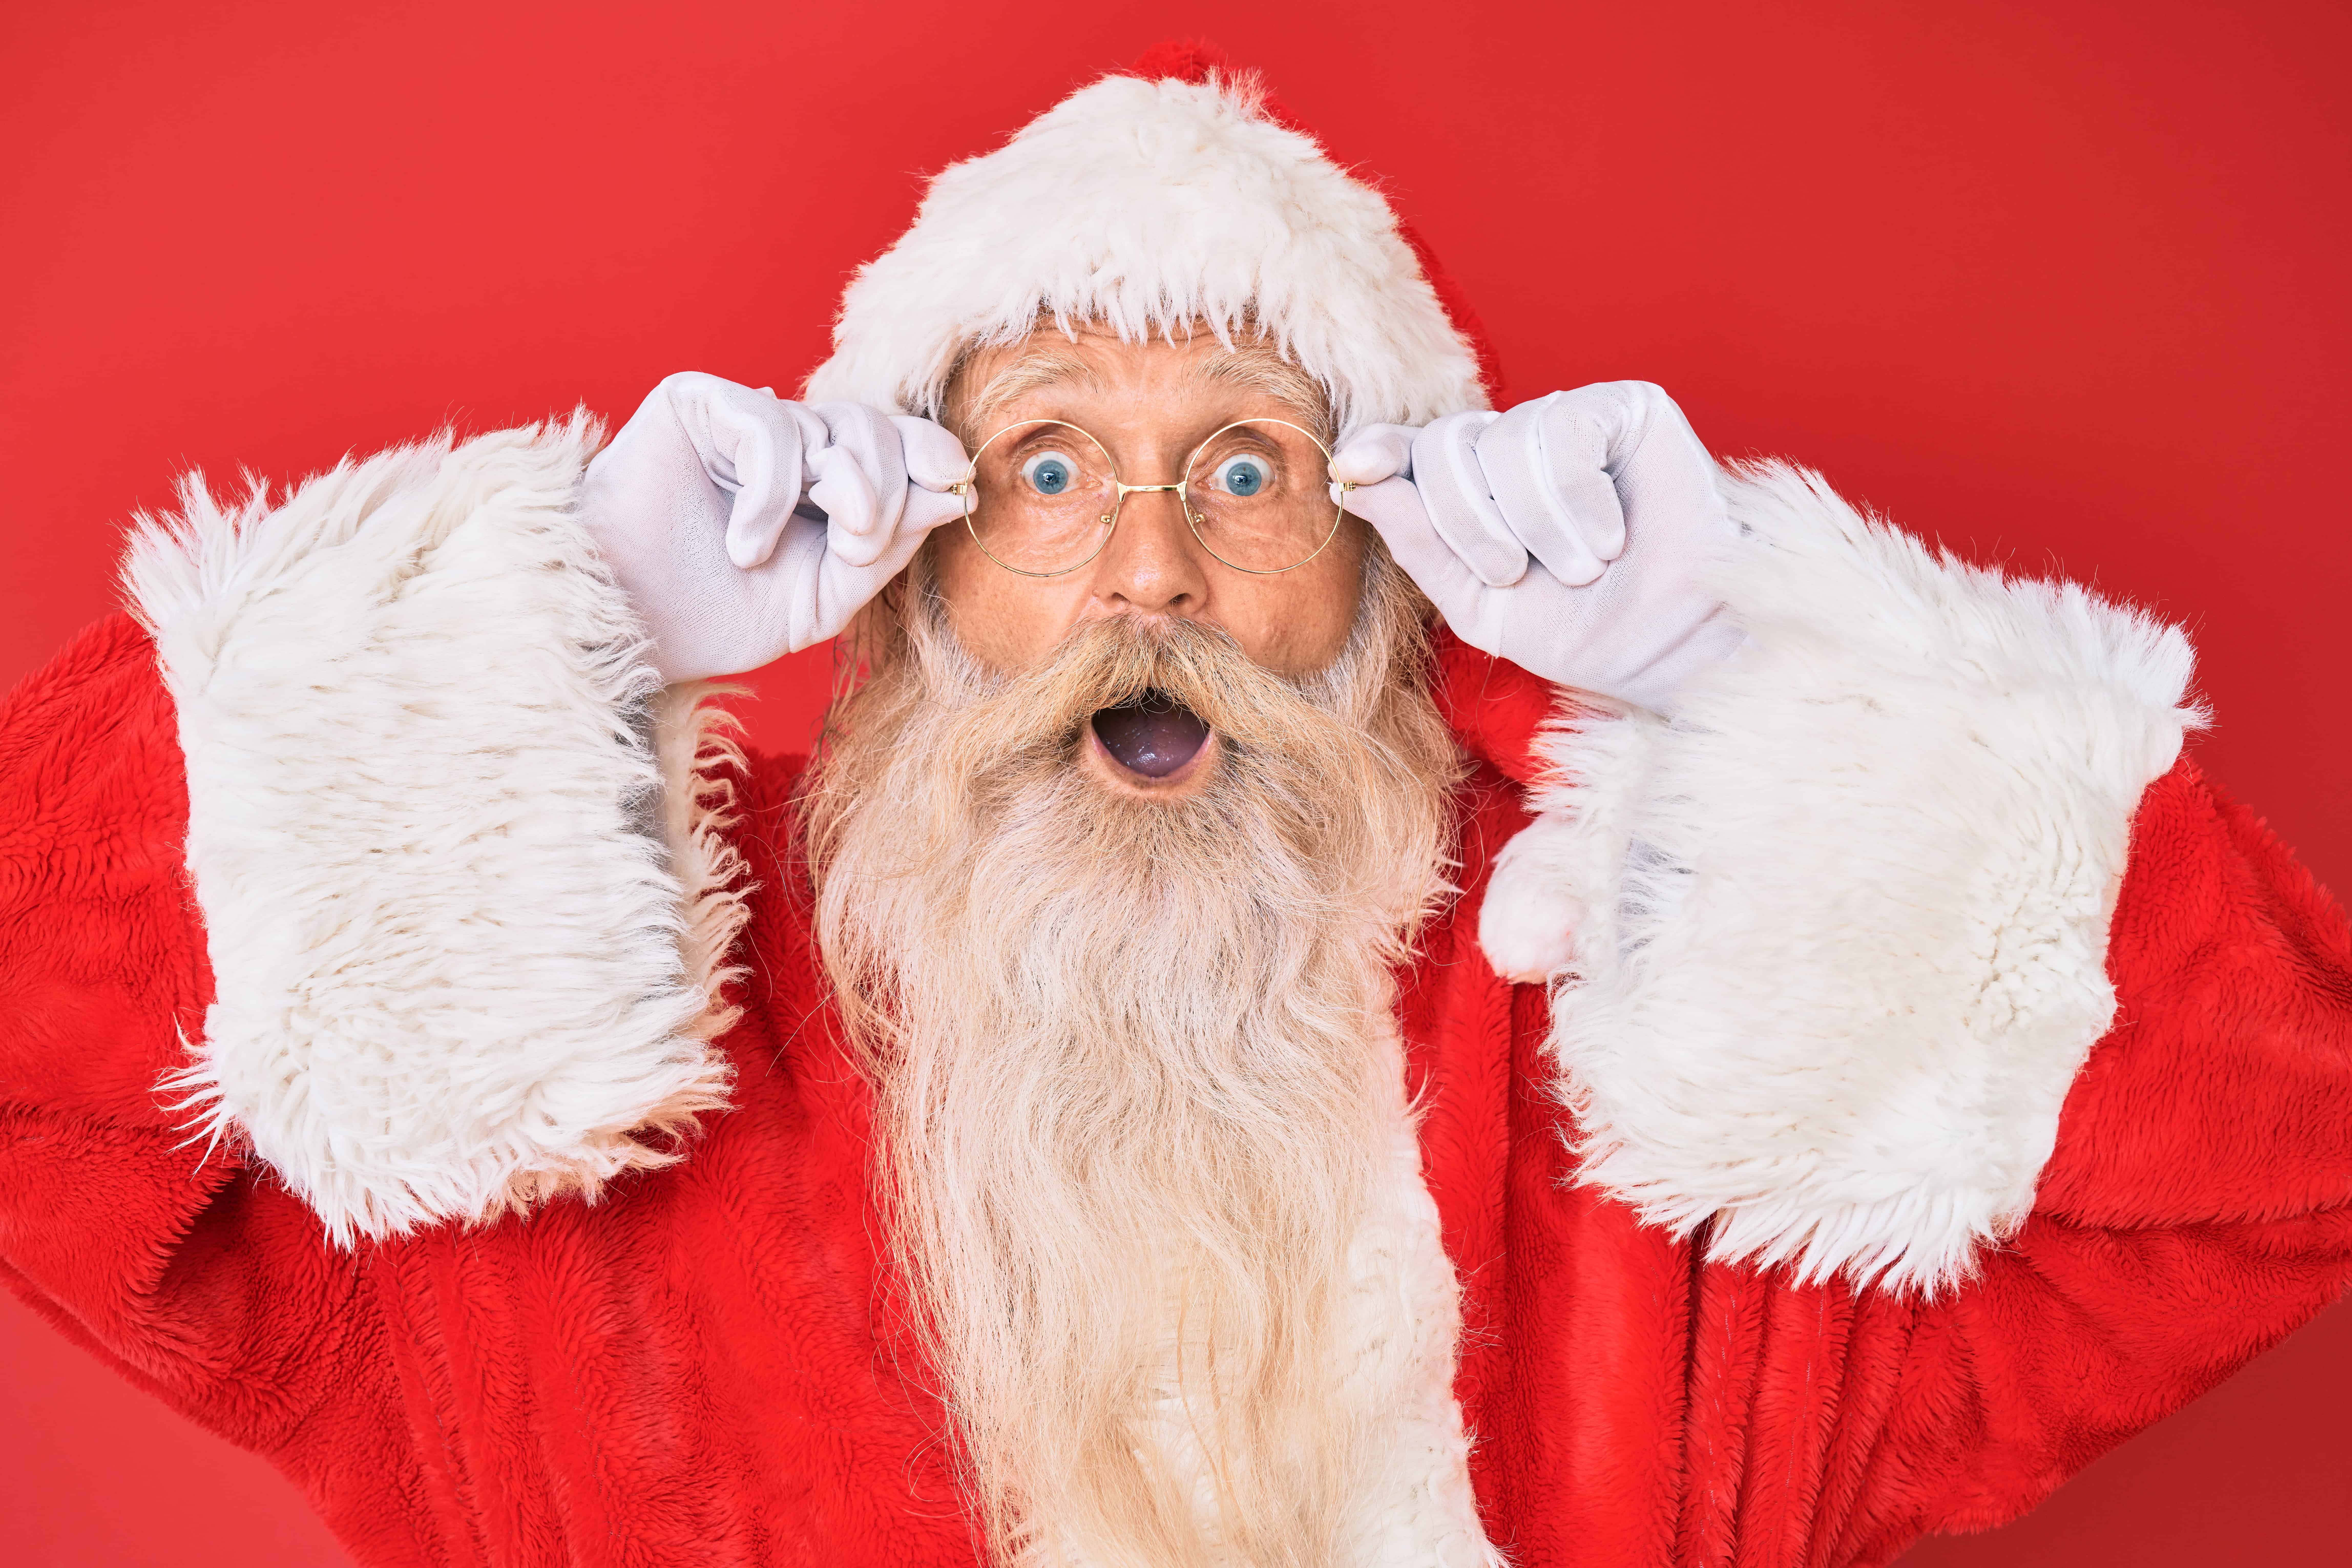 Crypto Santa’s naughty and nice list for Christmas 2021